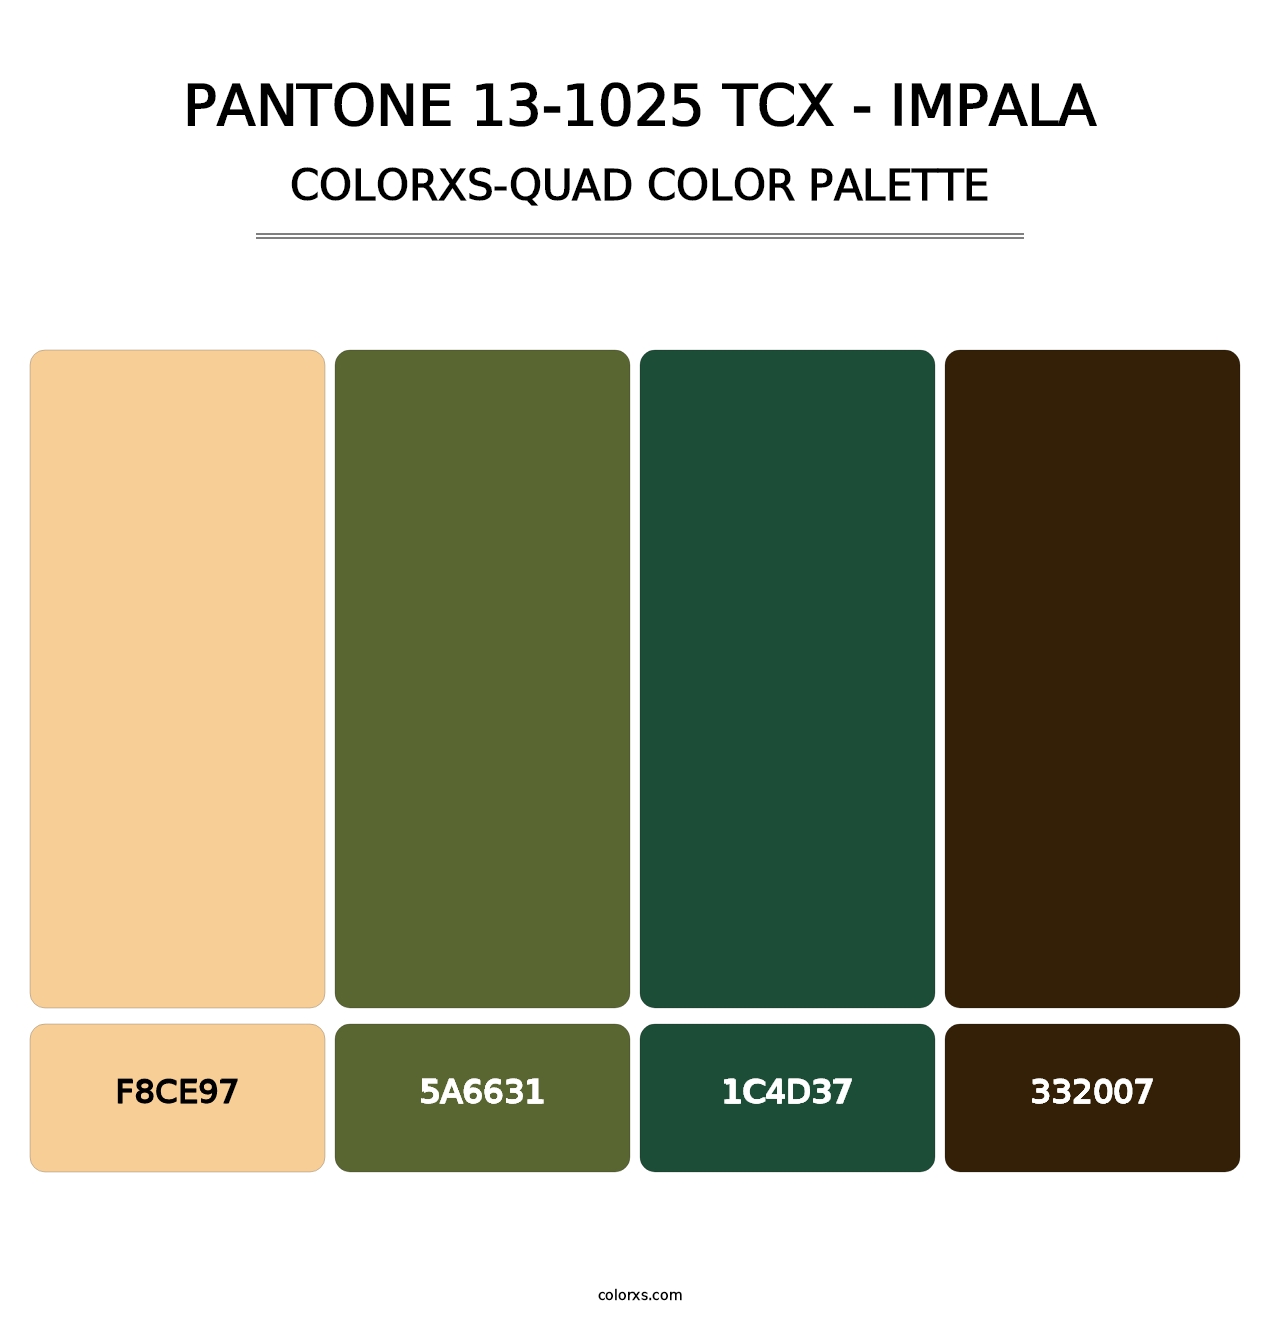 PANTONE 13-1025 TCX - Impala - Colorxs Quad Palette